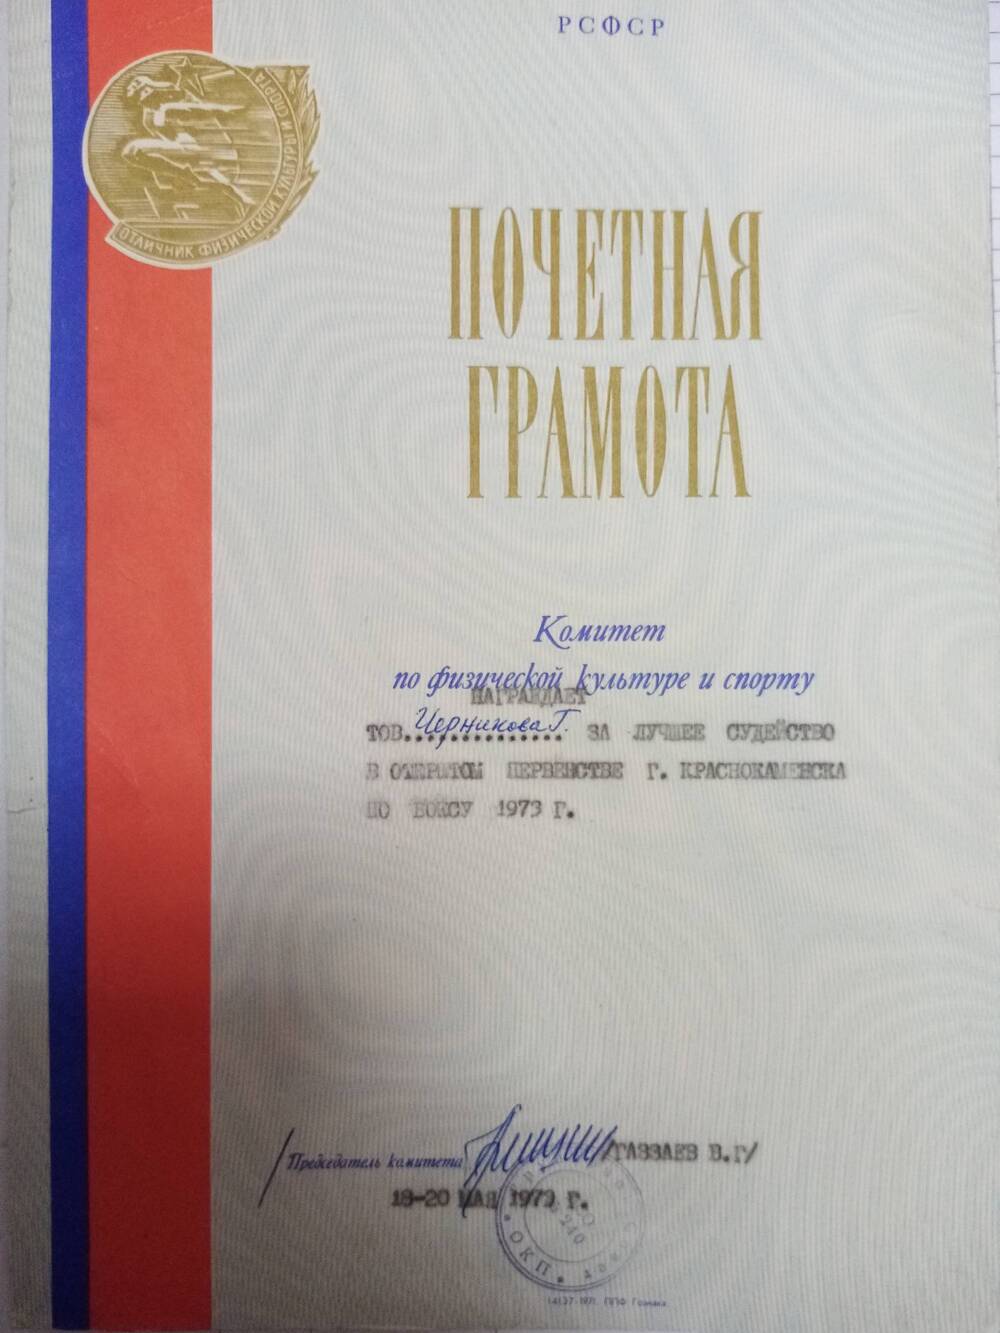 Почетная грамота Черникову Генадию Марковичу за лучшее судейство в открытом соревновании по боксу.